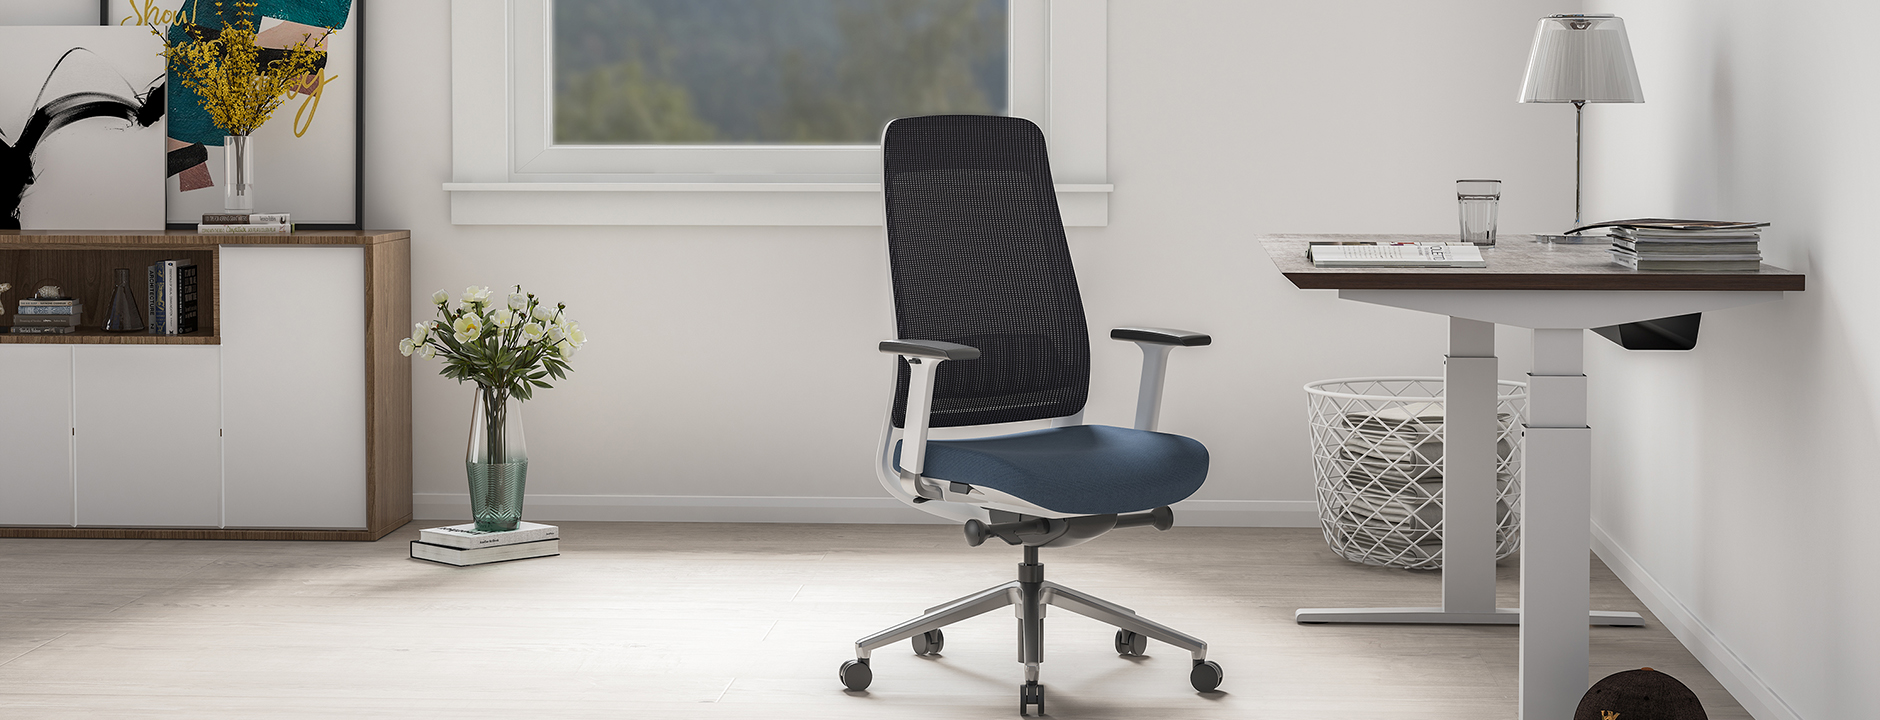 วิธีเลือกเก้าอี้สำนักงานให้เหมาะกับความต้องการของคุณ: คำแนะนำ